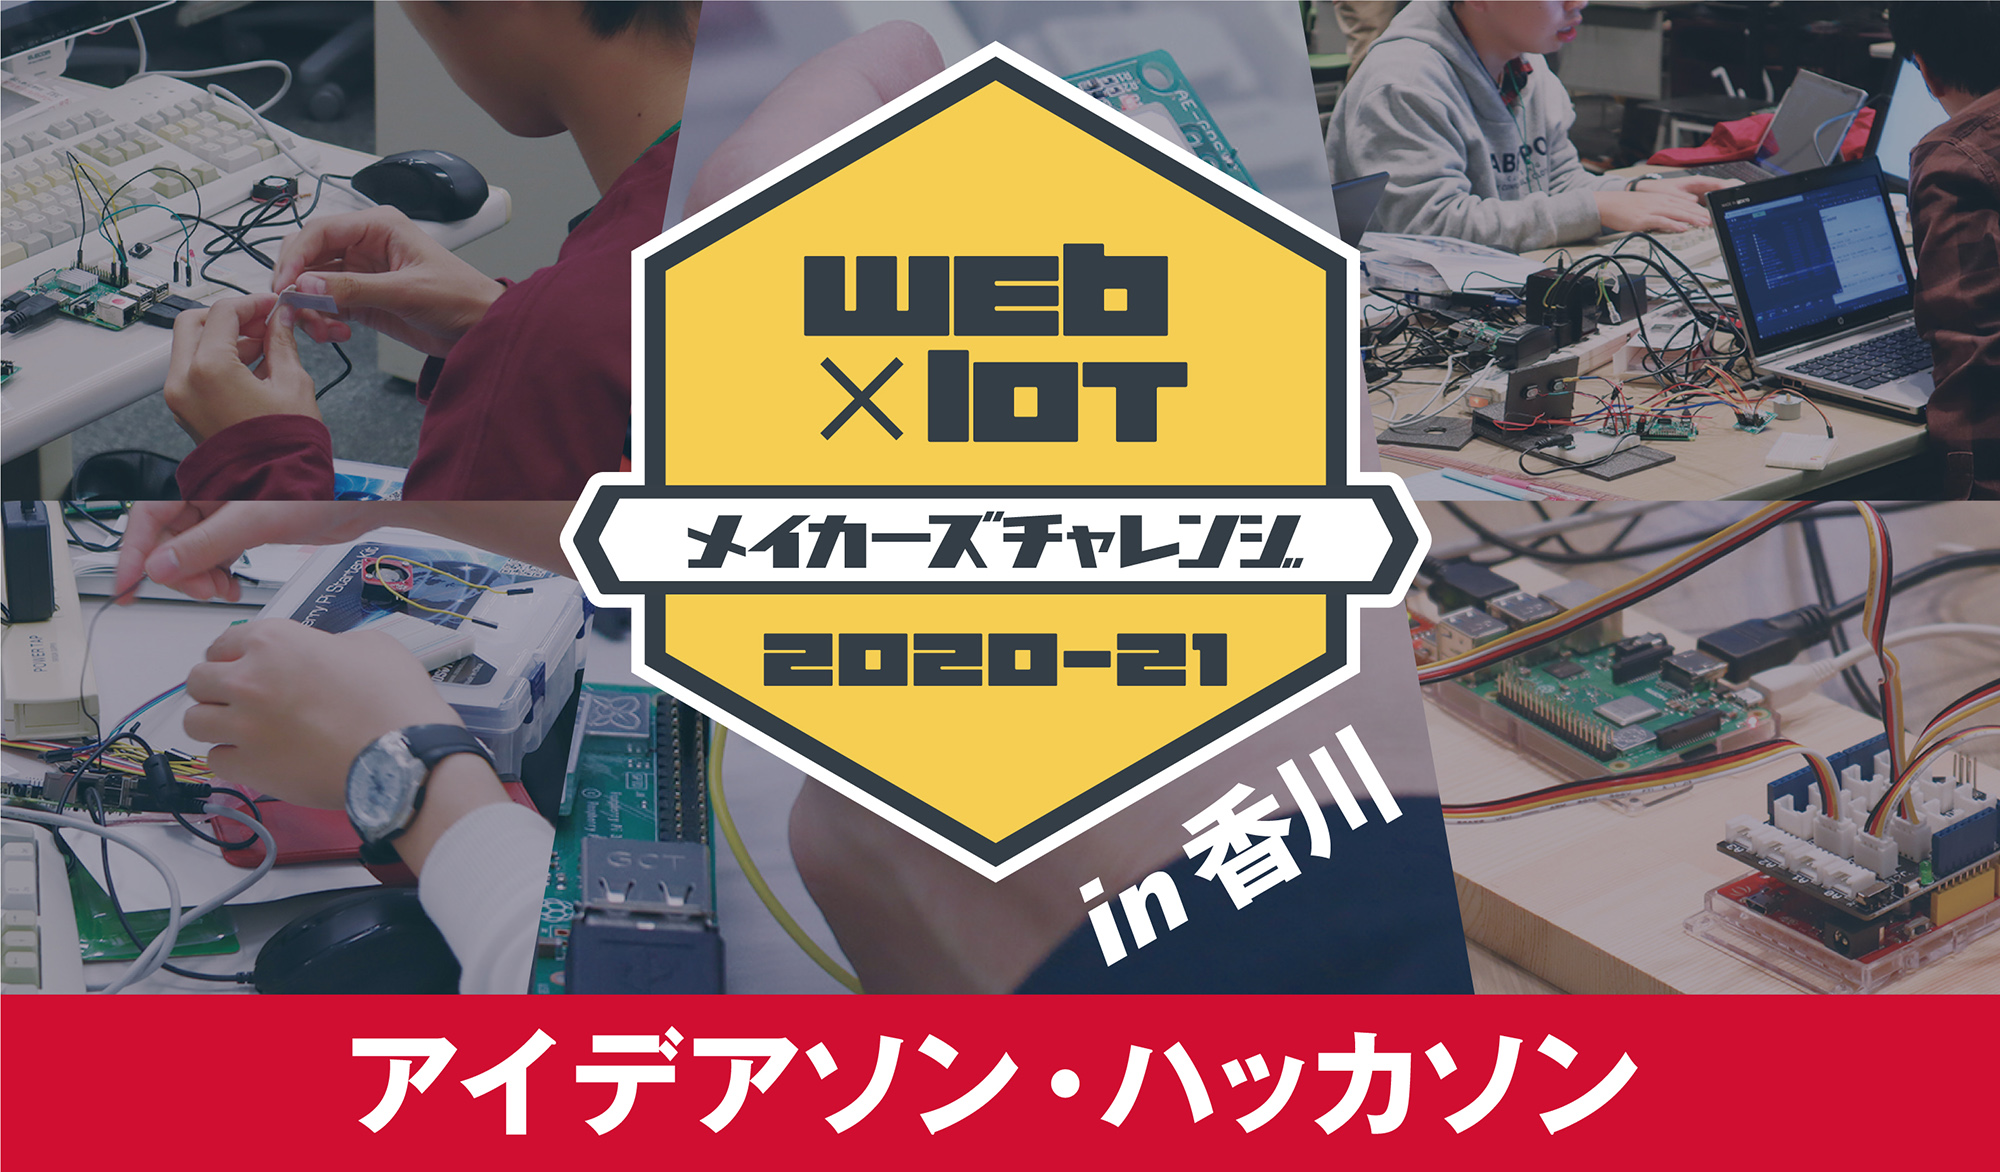 Web × IoT メイカーズチャレンジ 2020-21 in 香川　アイデアソン・ハッカソン